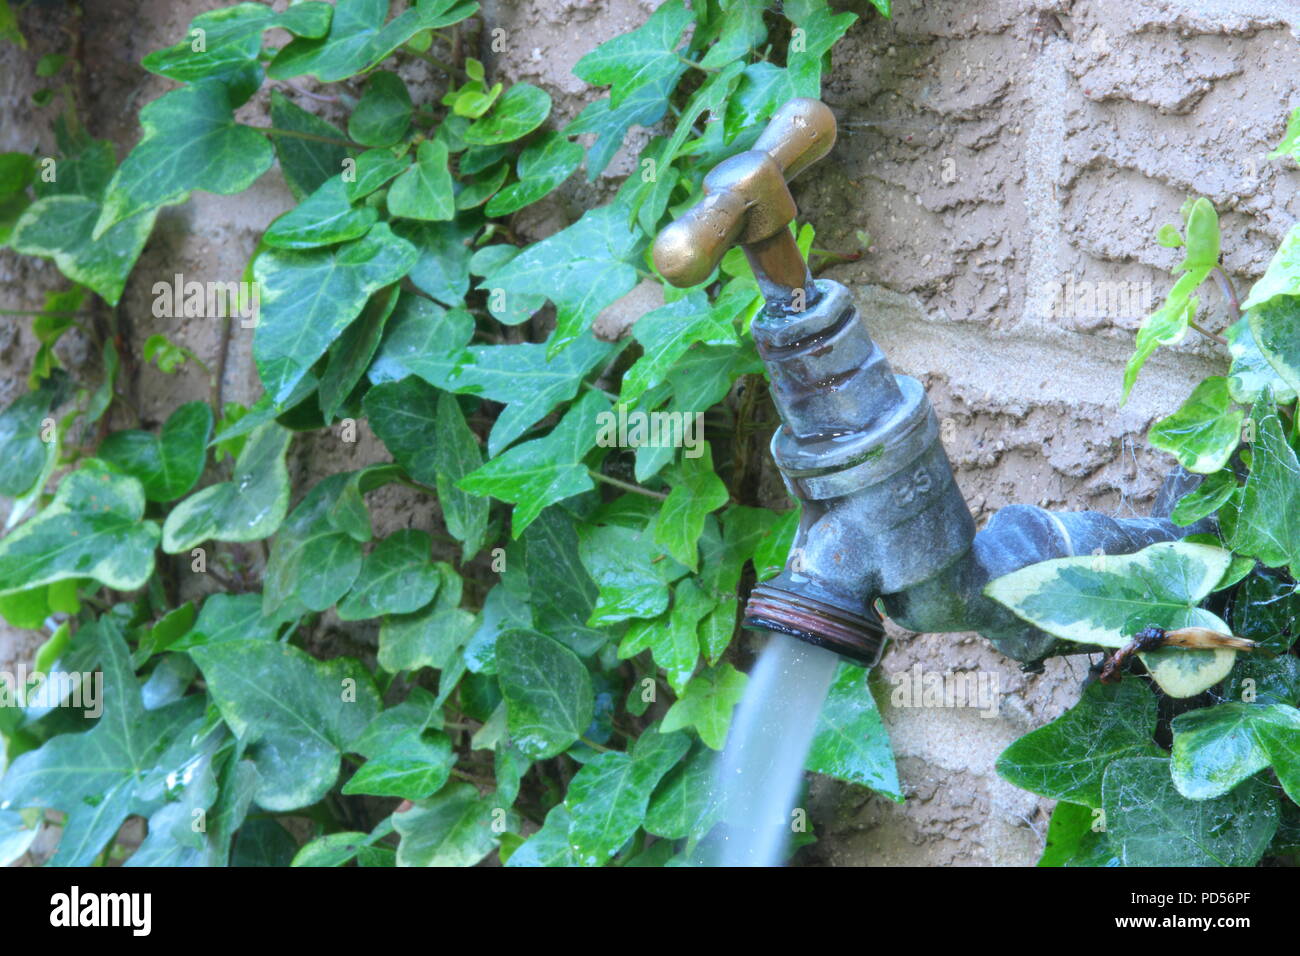 A running an outdoor garden tap Stock Photo